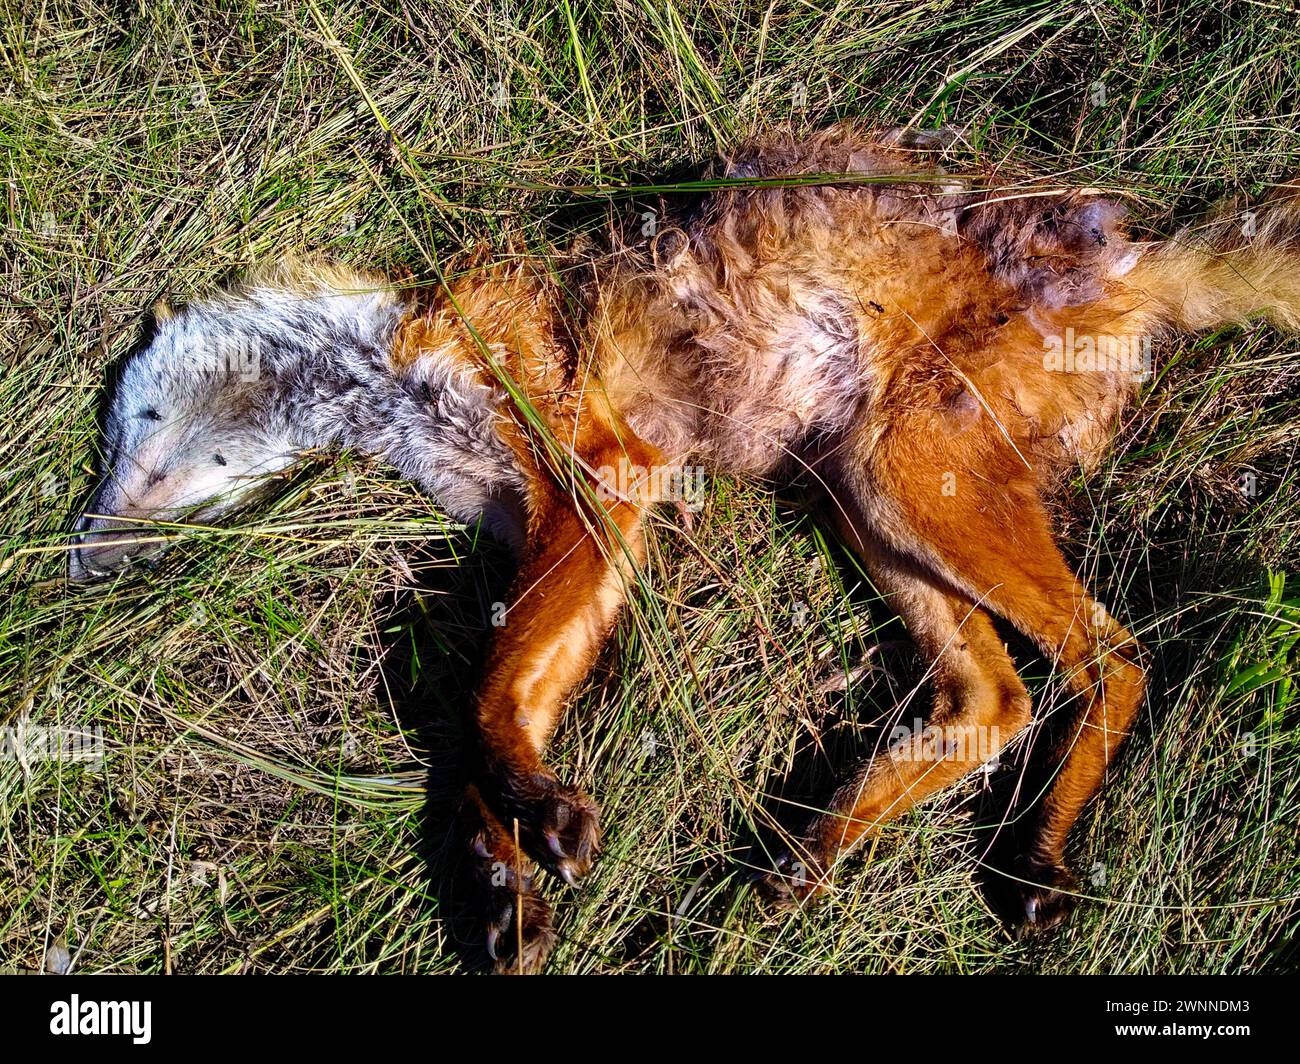 Ein verstorbenes Tier mit braunem Fell liegt in hohem grünen Gras, dessen Körper teilweise zersetzt ist. Die Leiche eines toten Fuchs. Das tote Tier zersetzt sich auf dem gr Stockfoto